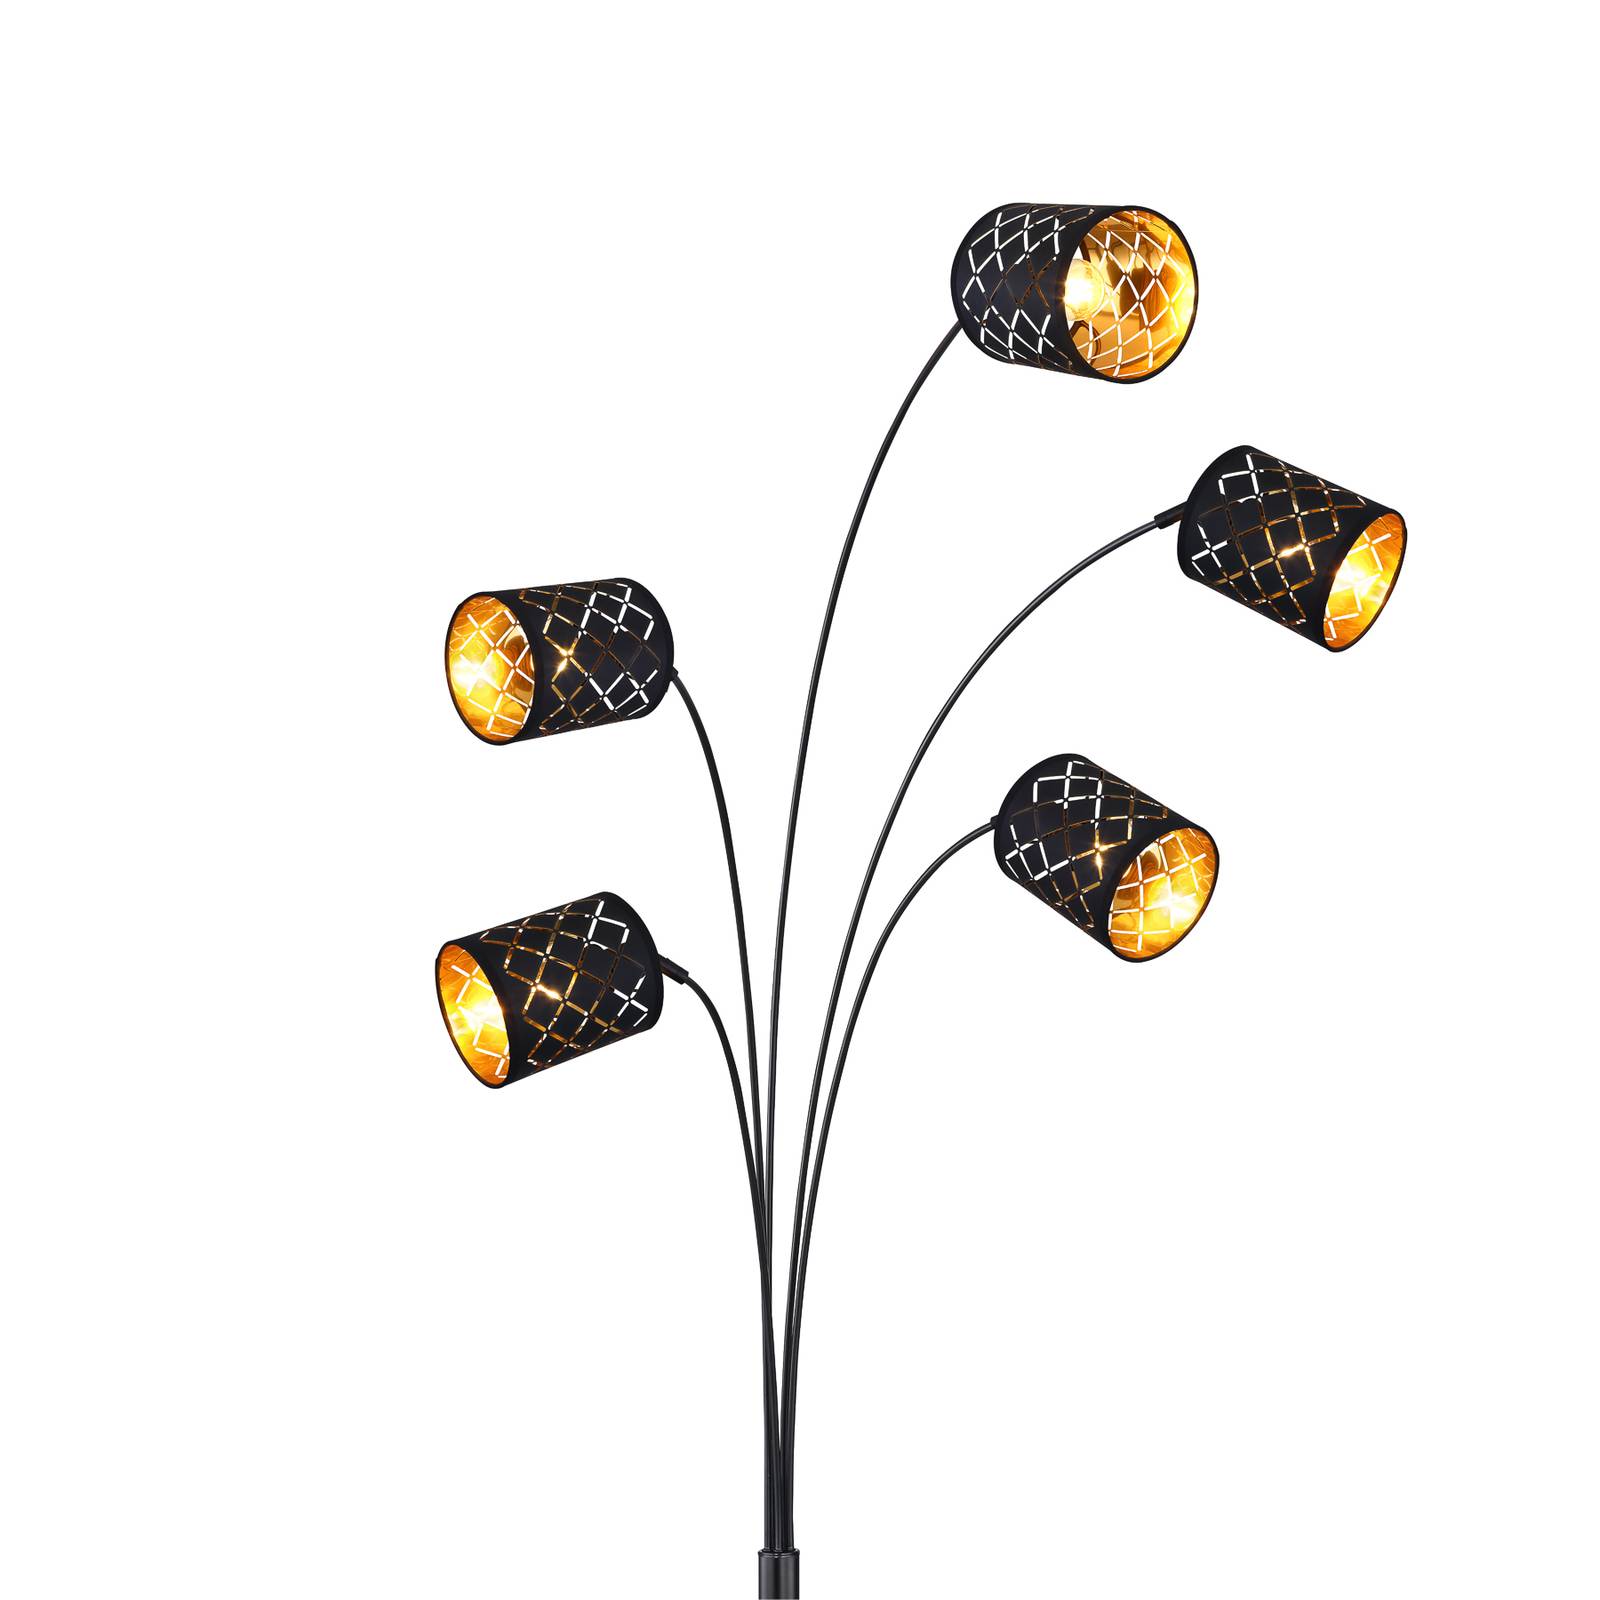 Clarke gulvlampe, sort/guld, 5 lyskilder